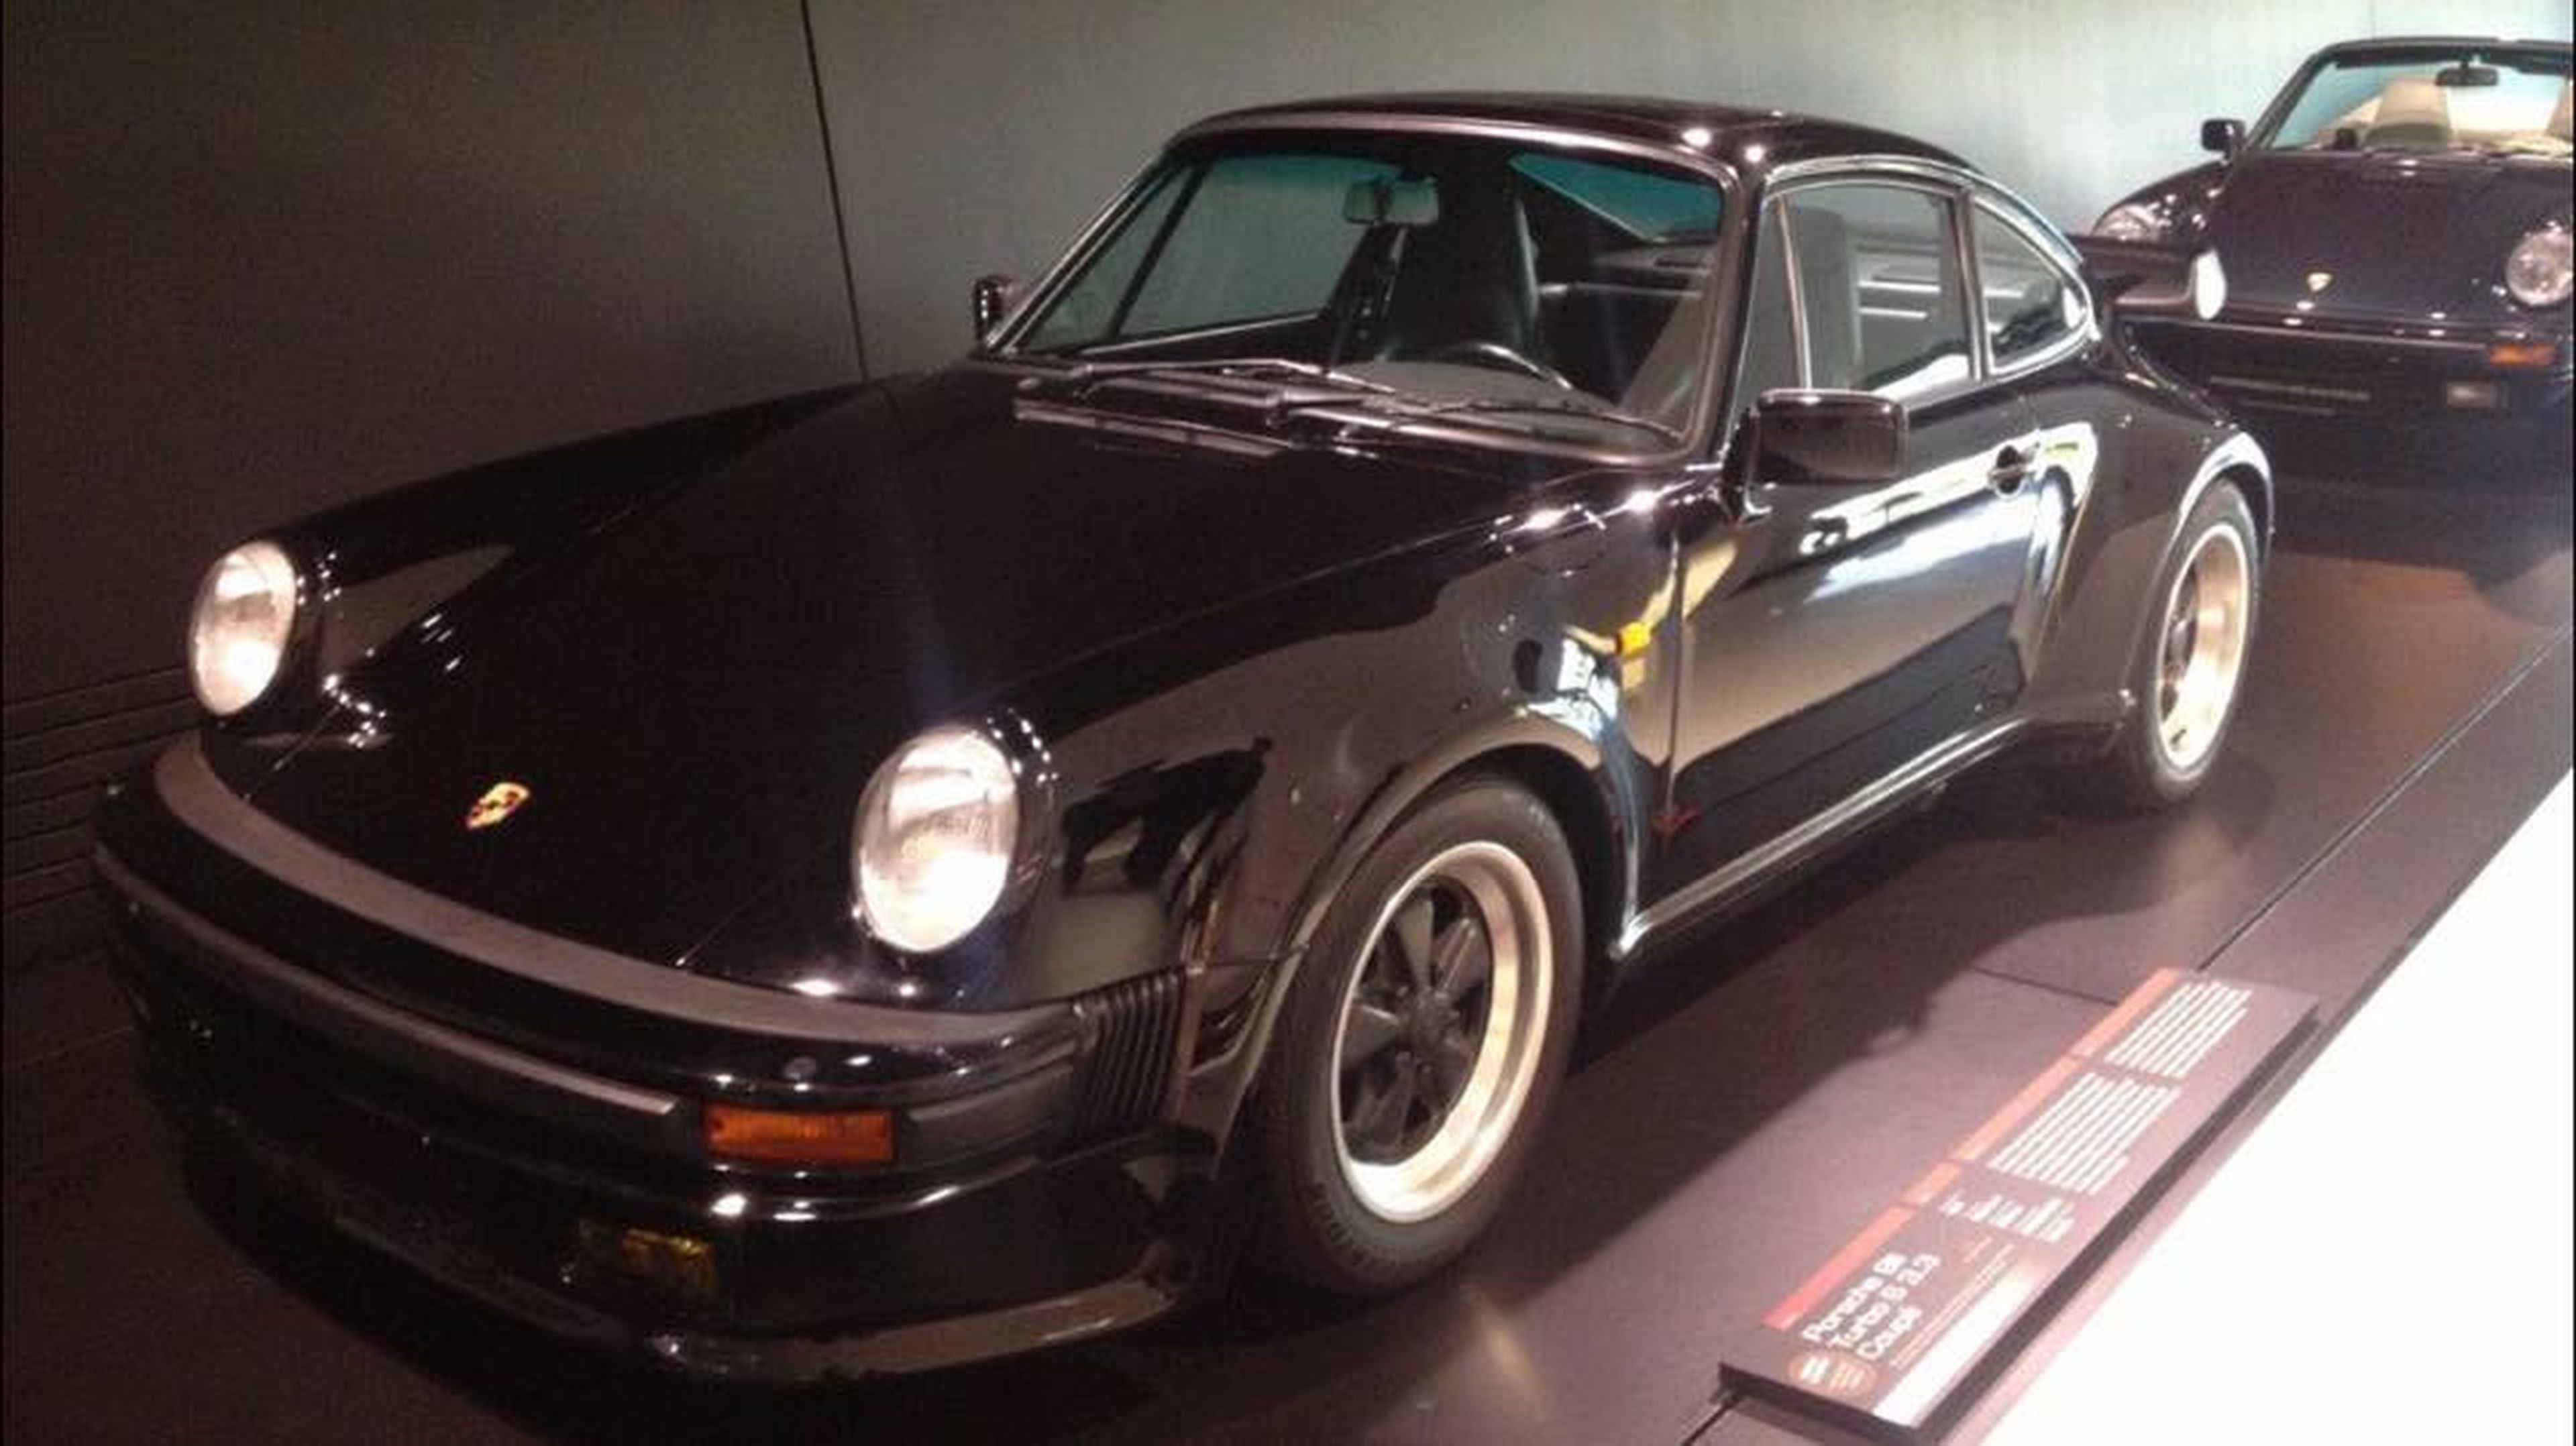 ¡Encuentra este Porsche 930 Turbo robado! Hay recompensa...